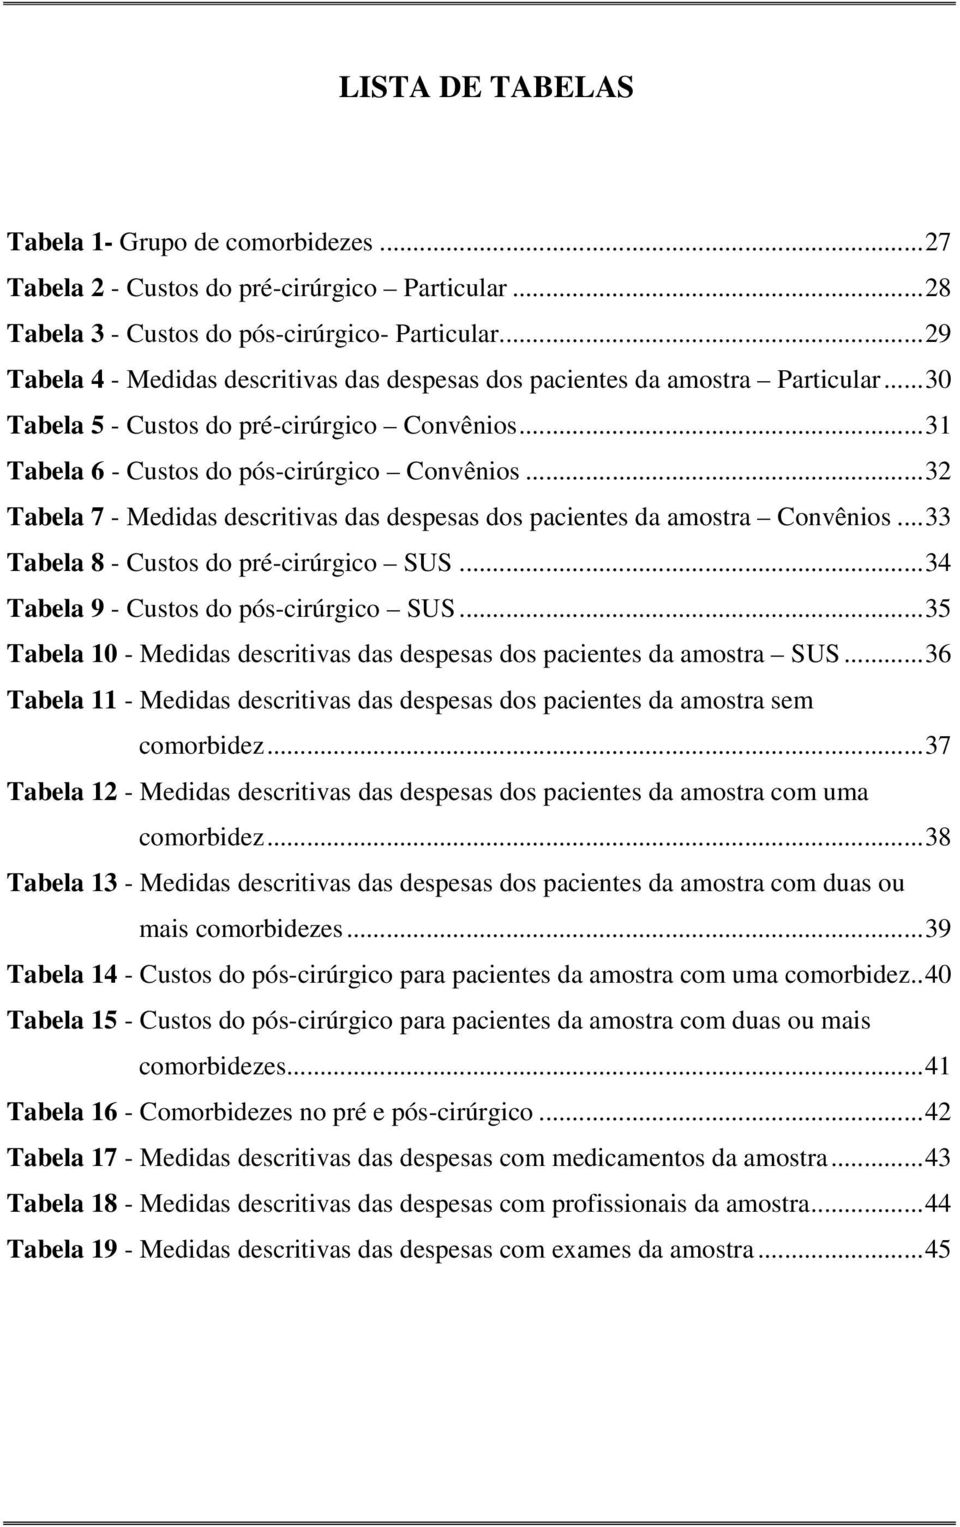 .. 32 Tabela 7 - Medidas descritivas das despesas dos pacientes da amostra Convênios... 33 Tabela 8 - Custos do pré-cirúrgico SUS... 34 Tabela 9 - Custos do pós-cirúrgico SUS.